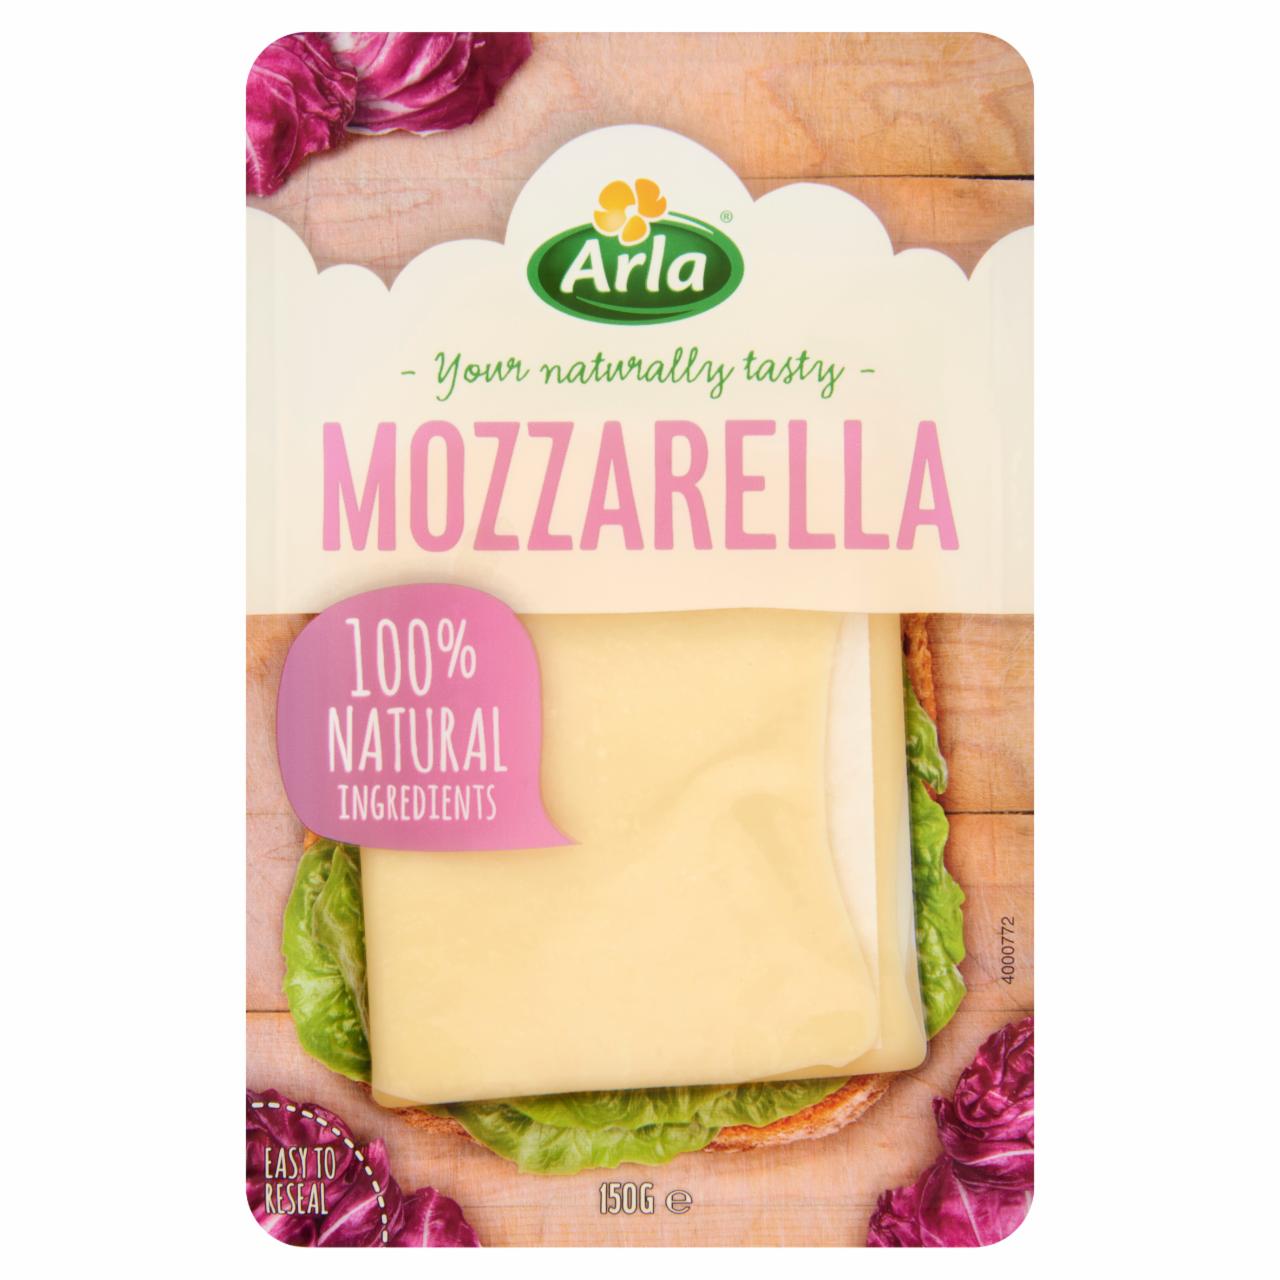 Képek - Arla félzsíros, félkemény, szeletelt mozzarella sajt 150 g